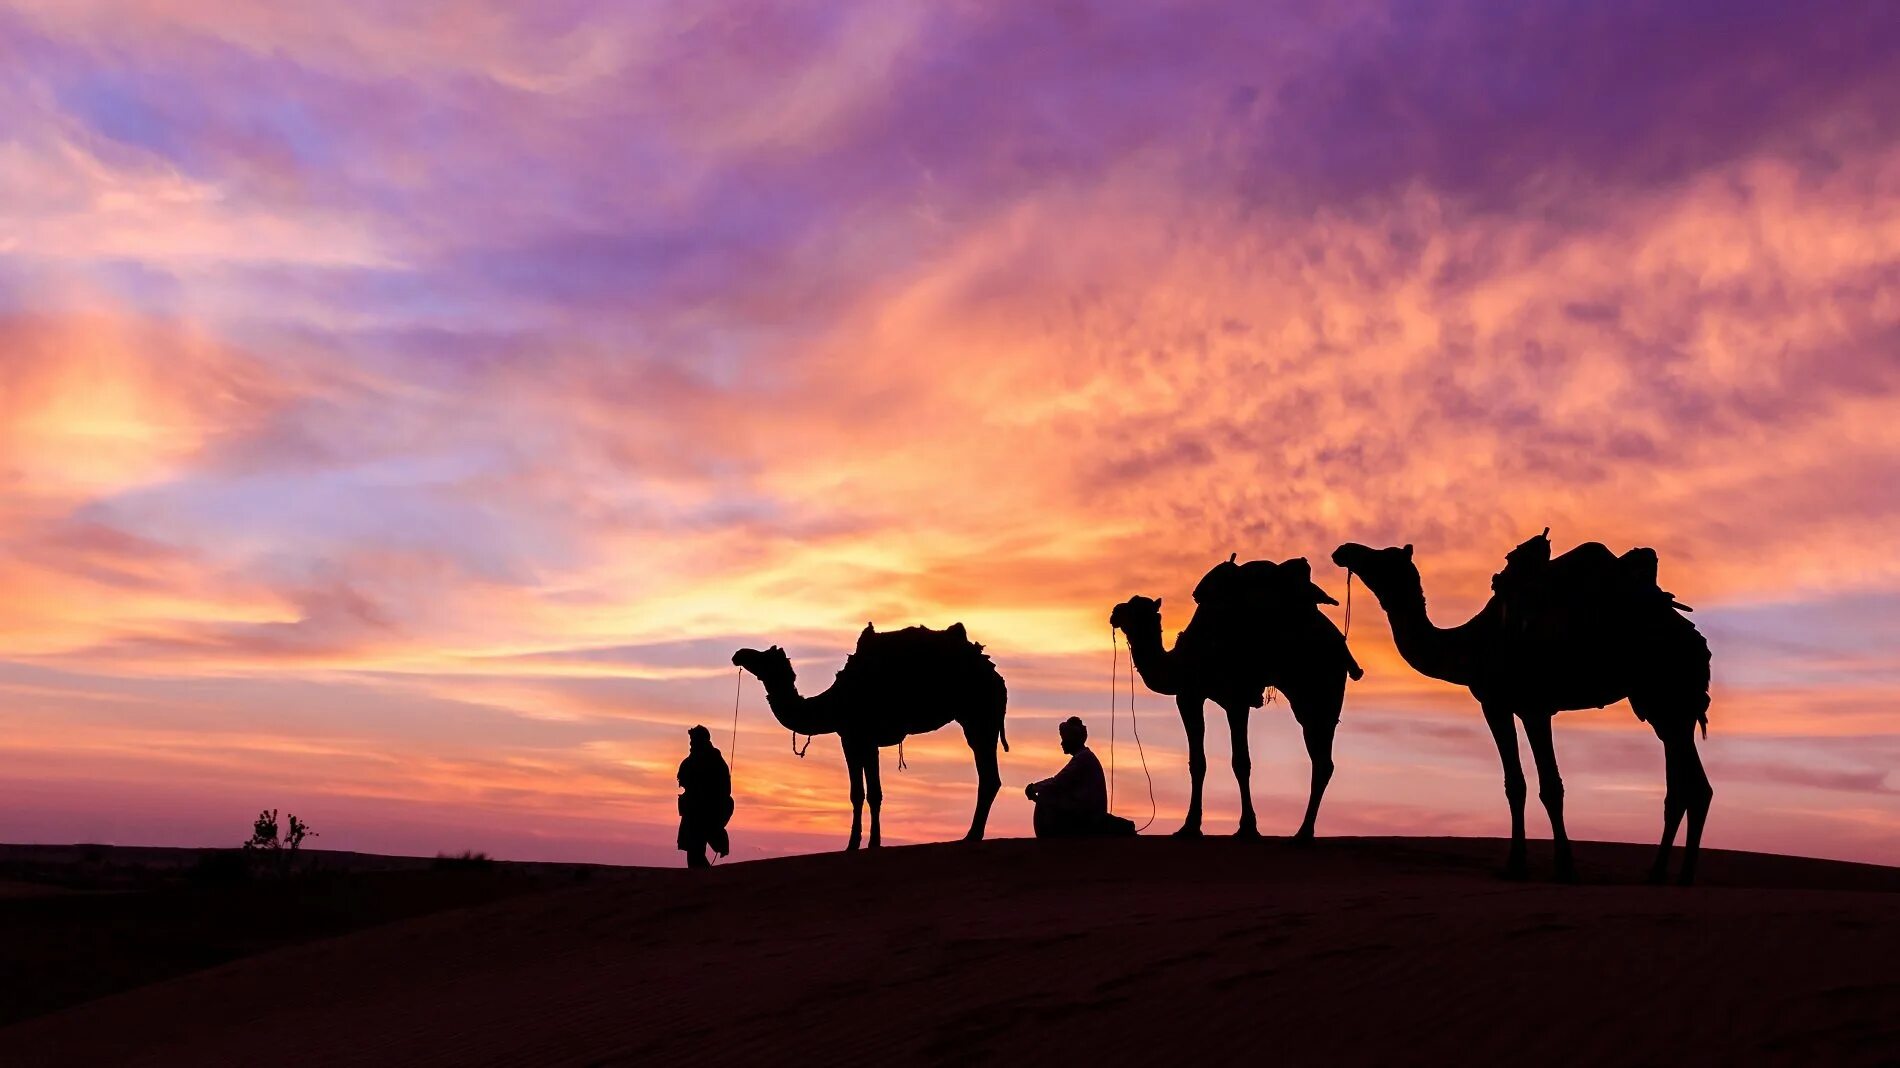 Караван рядом. Караван с верблюдами в пустыне. Караван Аравийской пустыне ОАЭ. Арабы с караваном в пустыне. Караван верблюдов в пустыне.